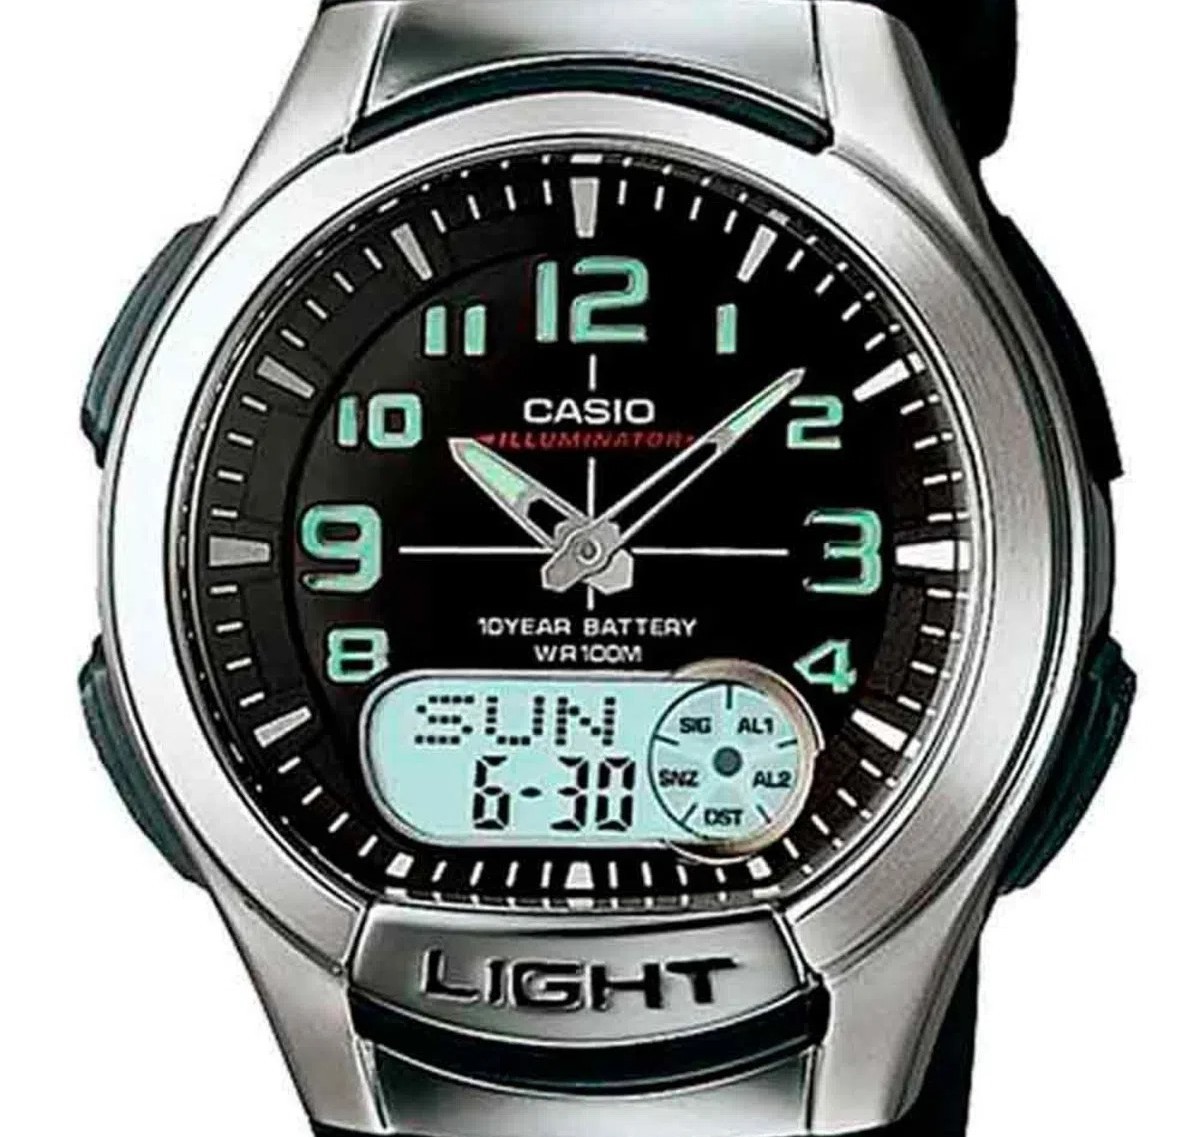 Relógio Casio Masculino Anadigi Aq-180wd-1bvdf Aço Inox - Altarelojoria  relógios originais invicta orient casio e muito mais.